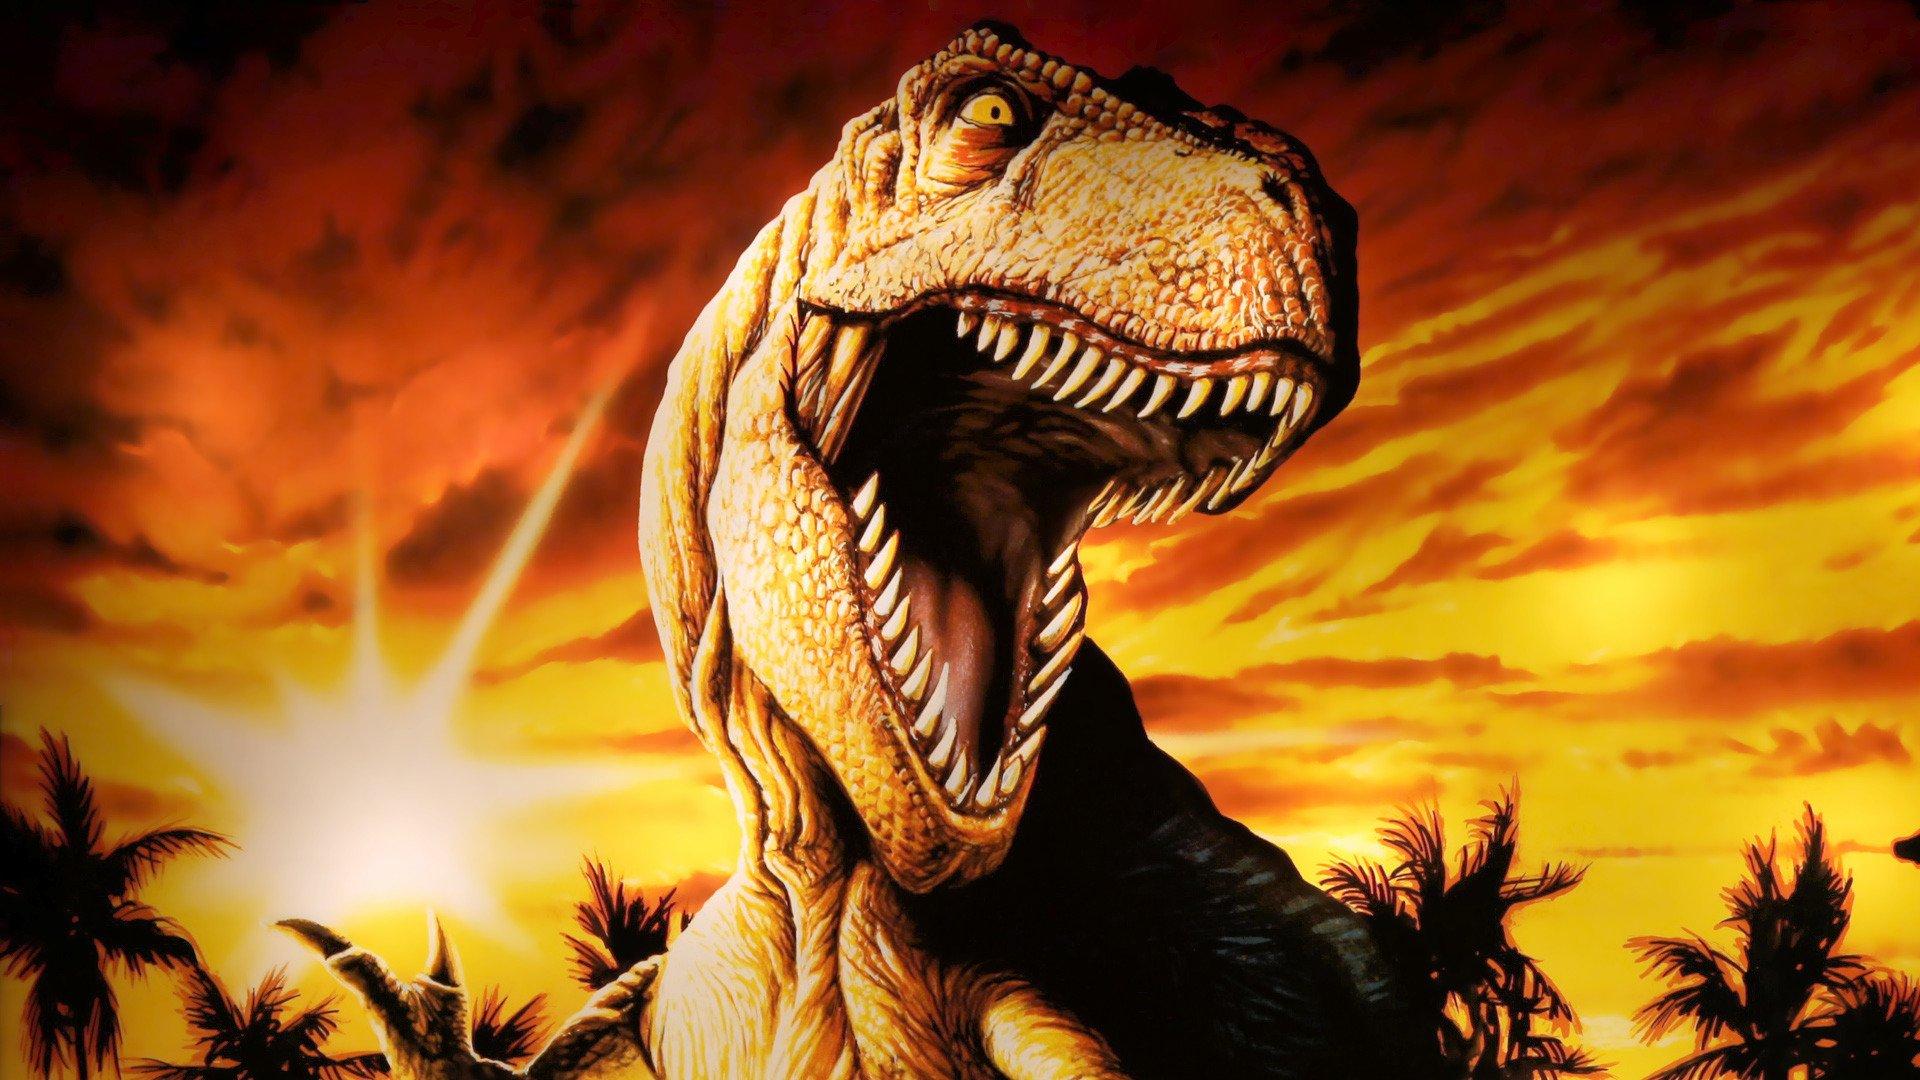 1920 x 1080 · jpeg - Jurassic Park Wallpaper HD | PixelsTalk